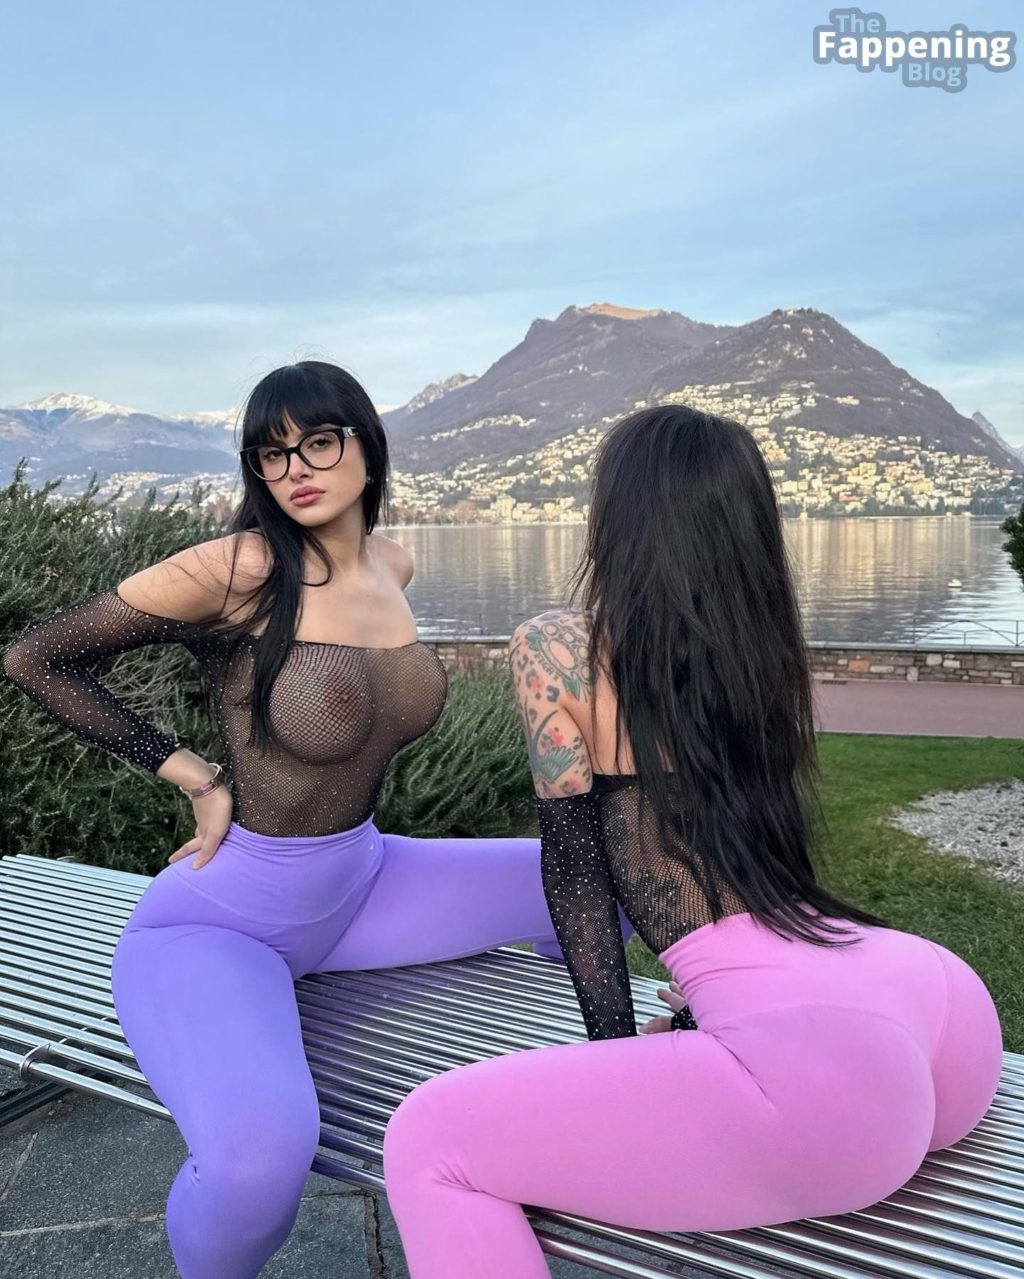 Martina Vismara Alexis Mucci Show Their Nude Boobs Photos